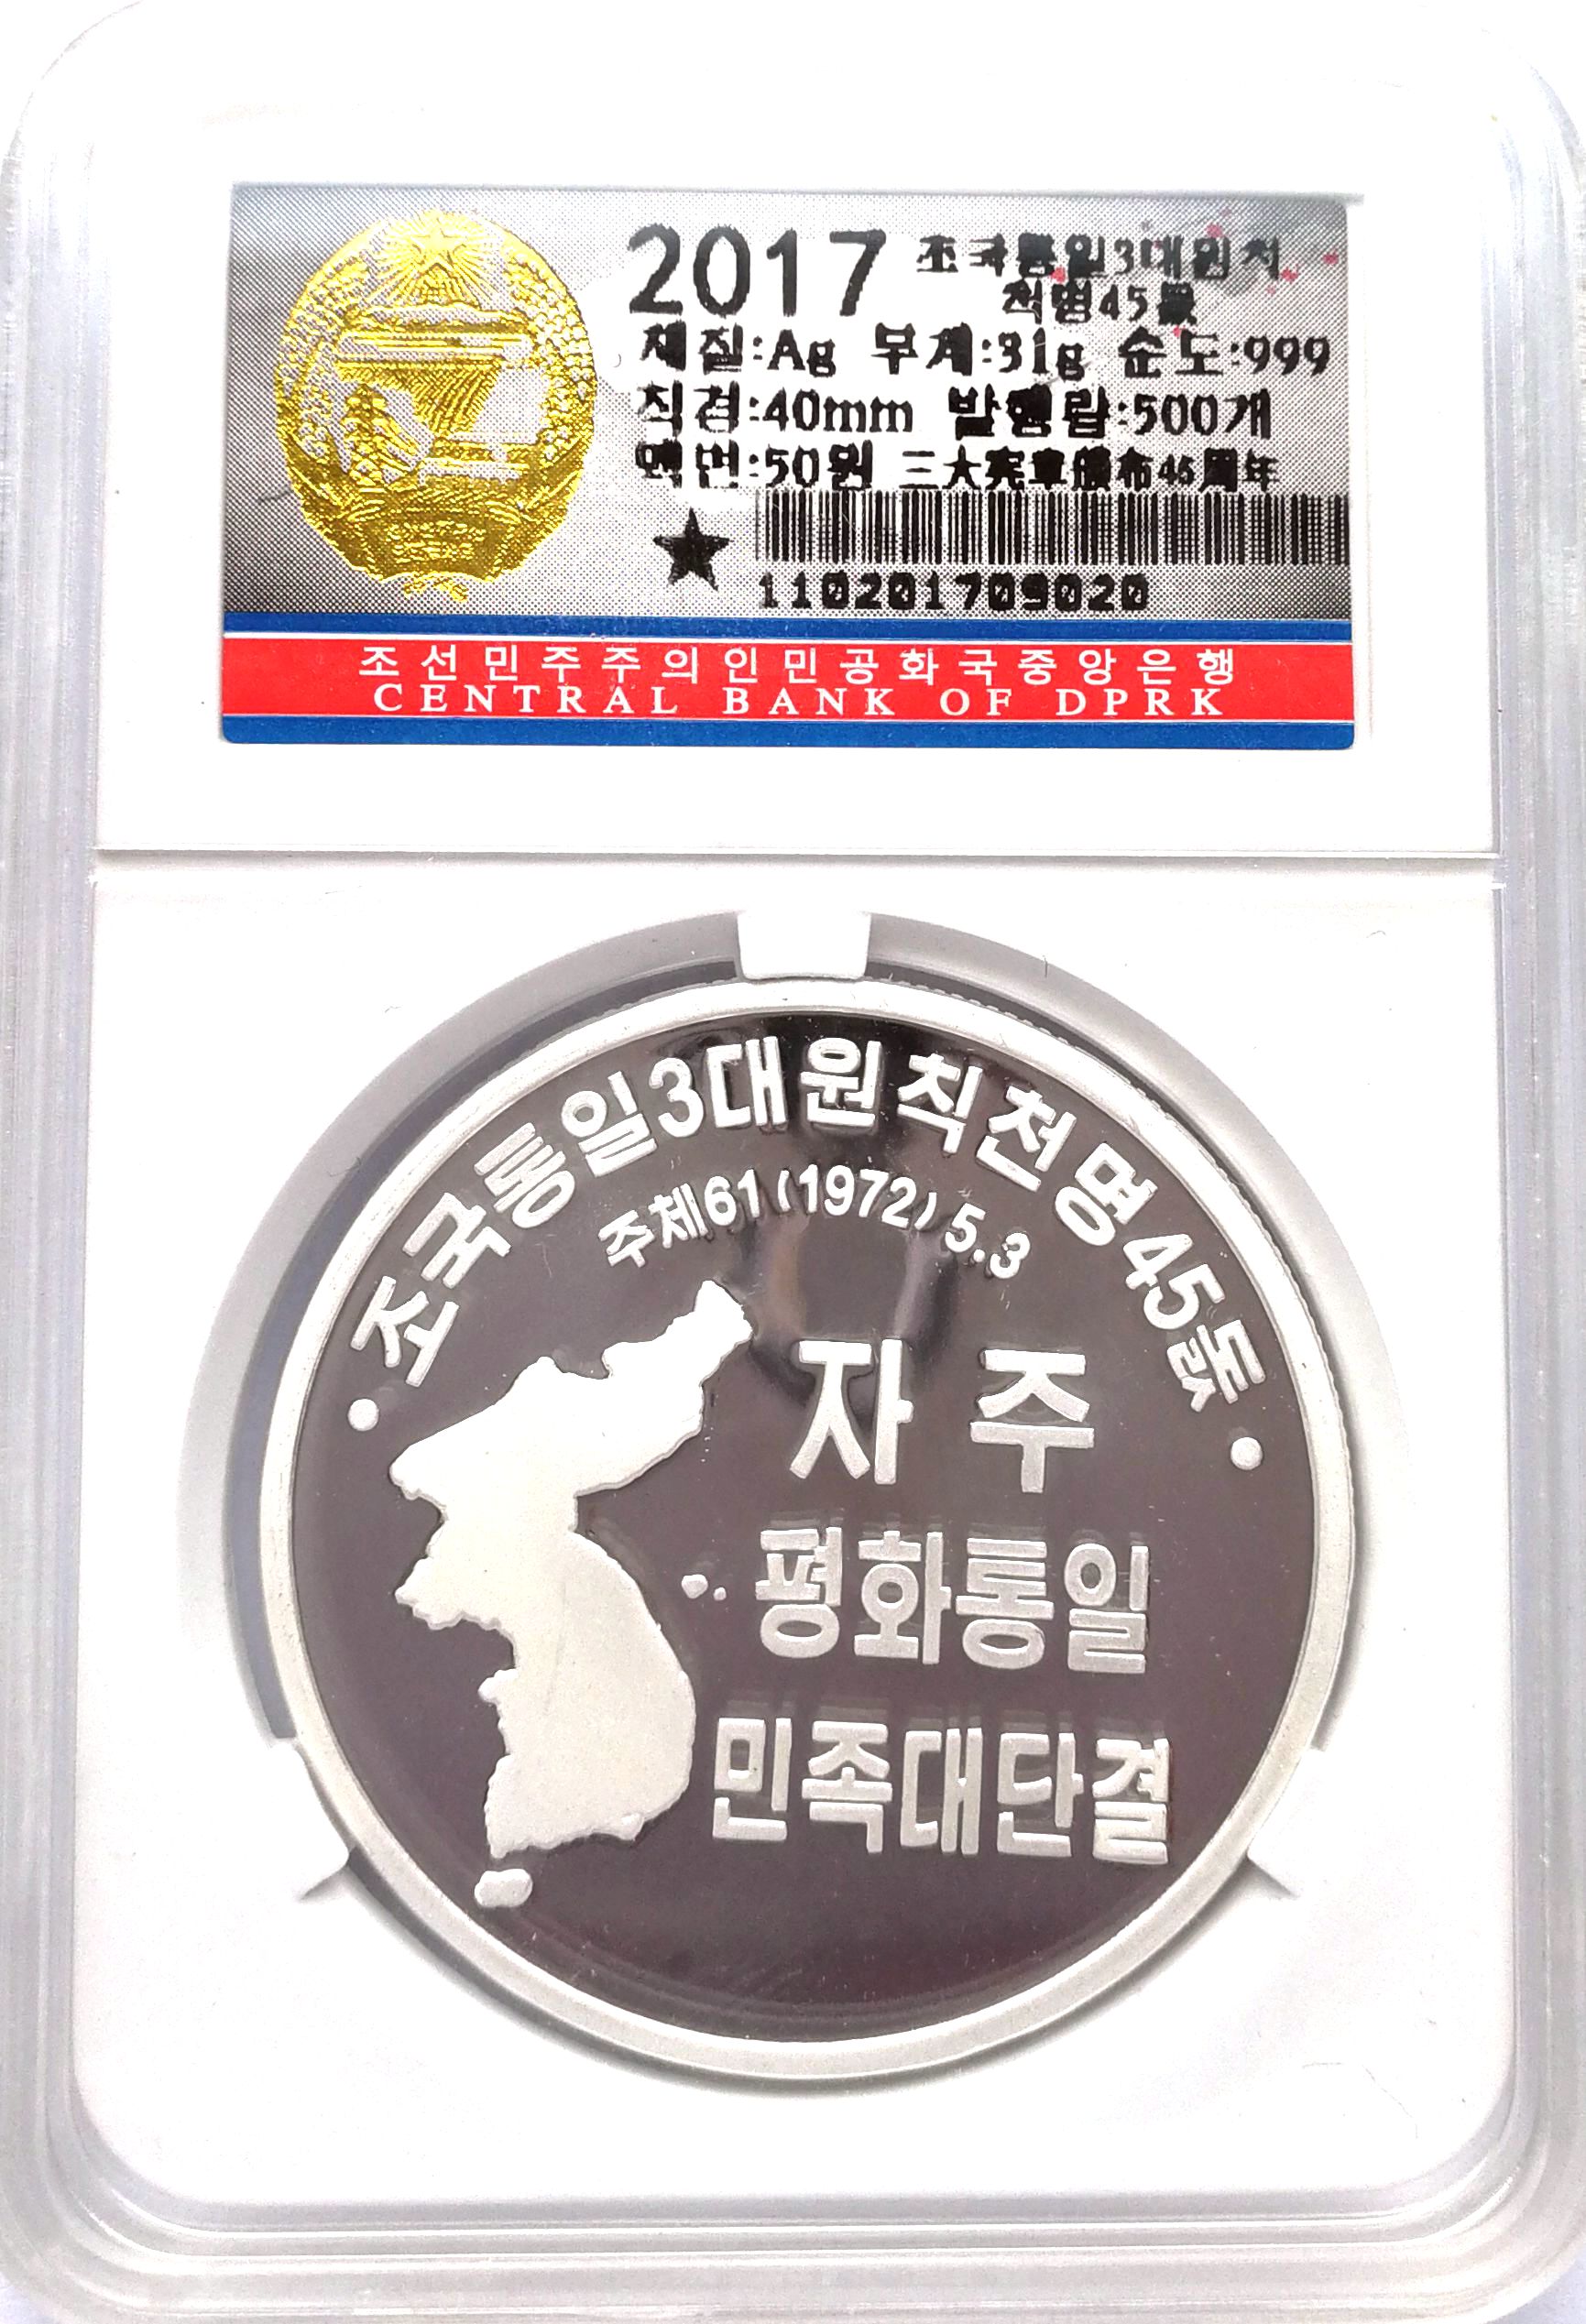 L3558, Korea Silver Coin "National Reunification Map" 1 Oz, 2017, Korean Grade